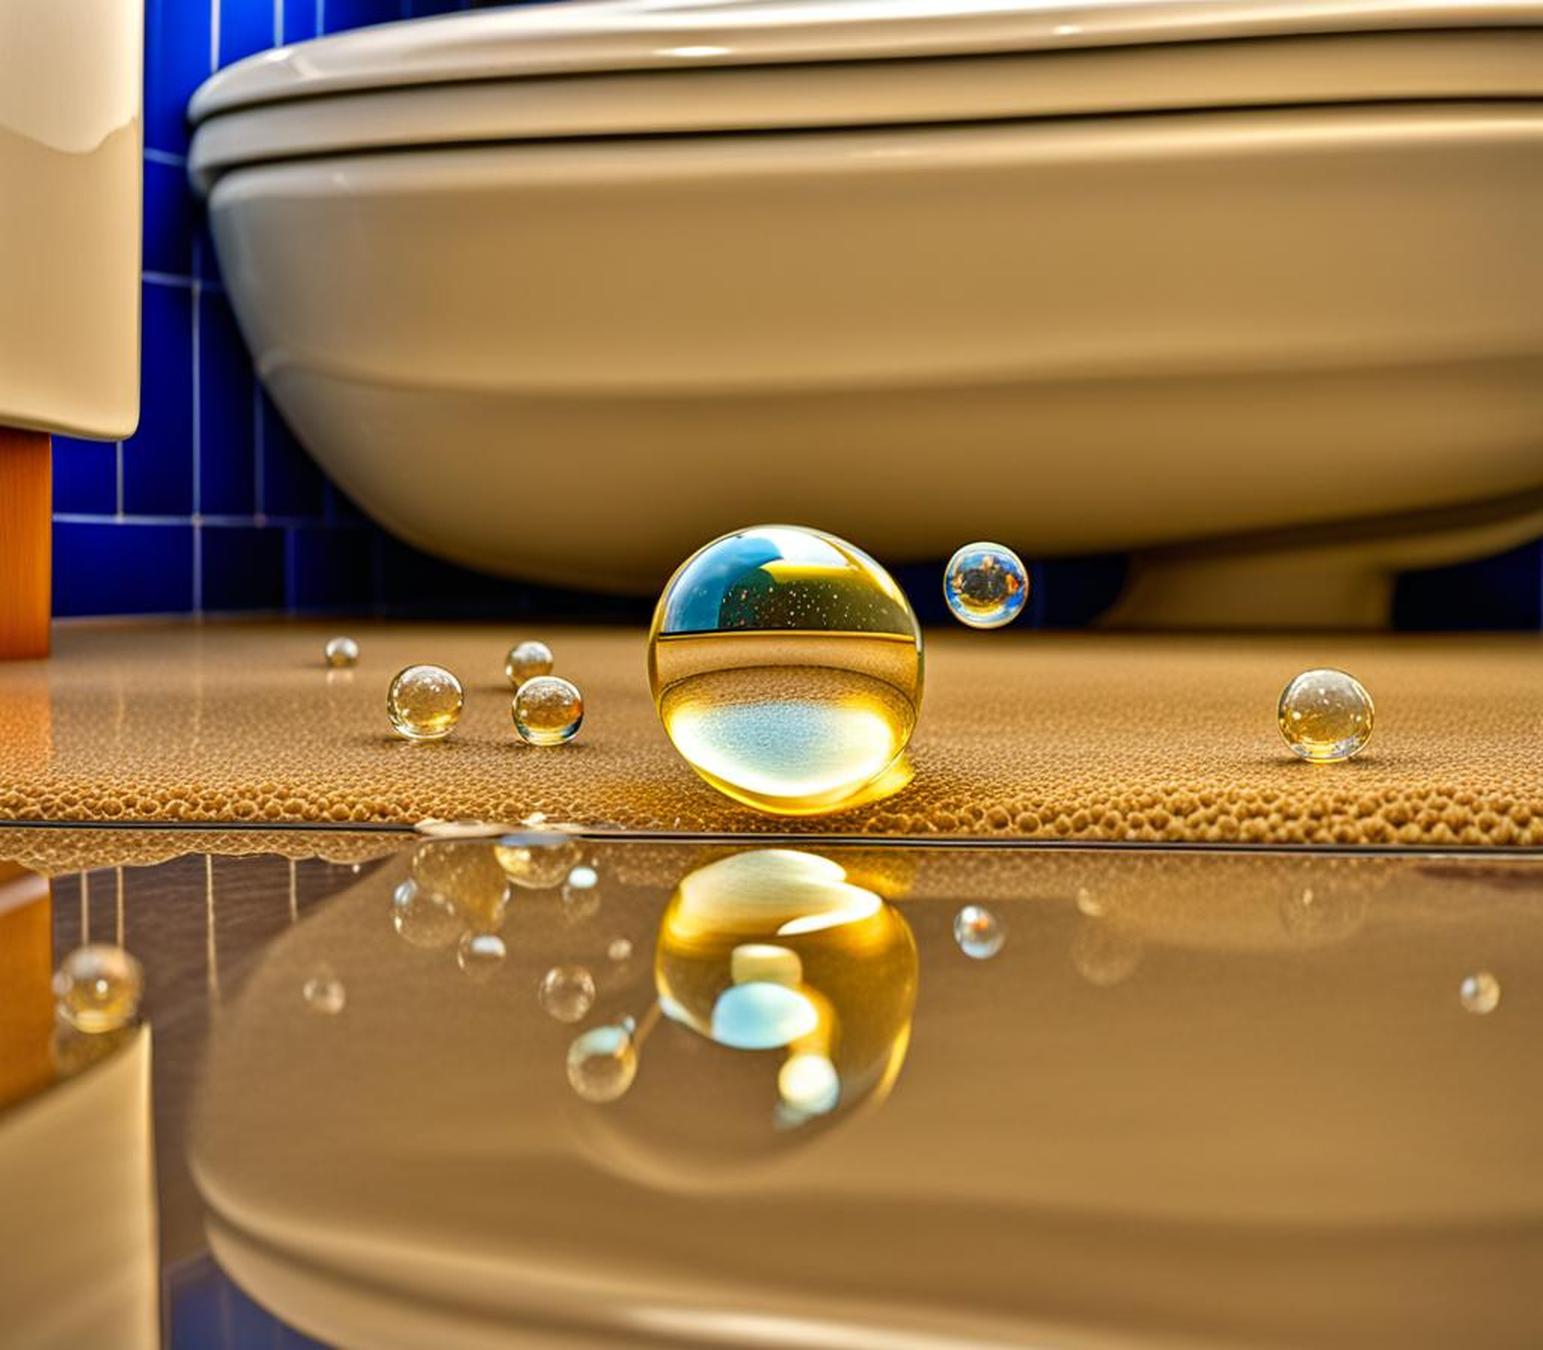 toilet bubbles when sink drains